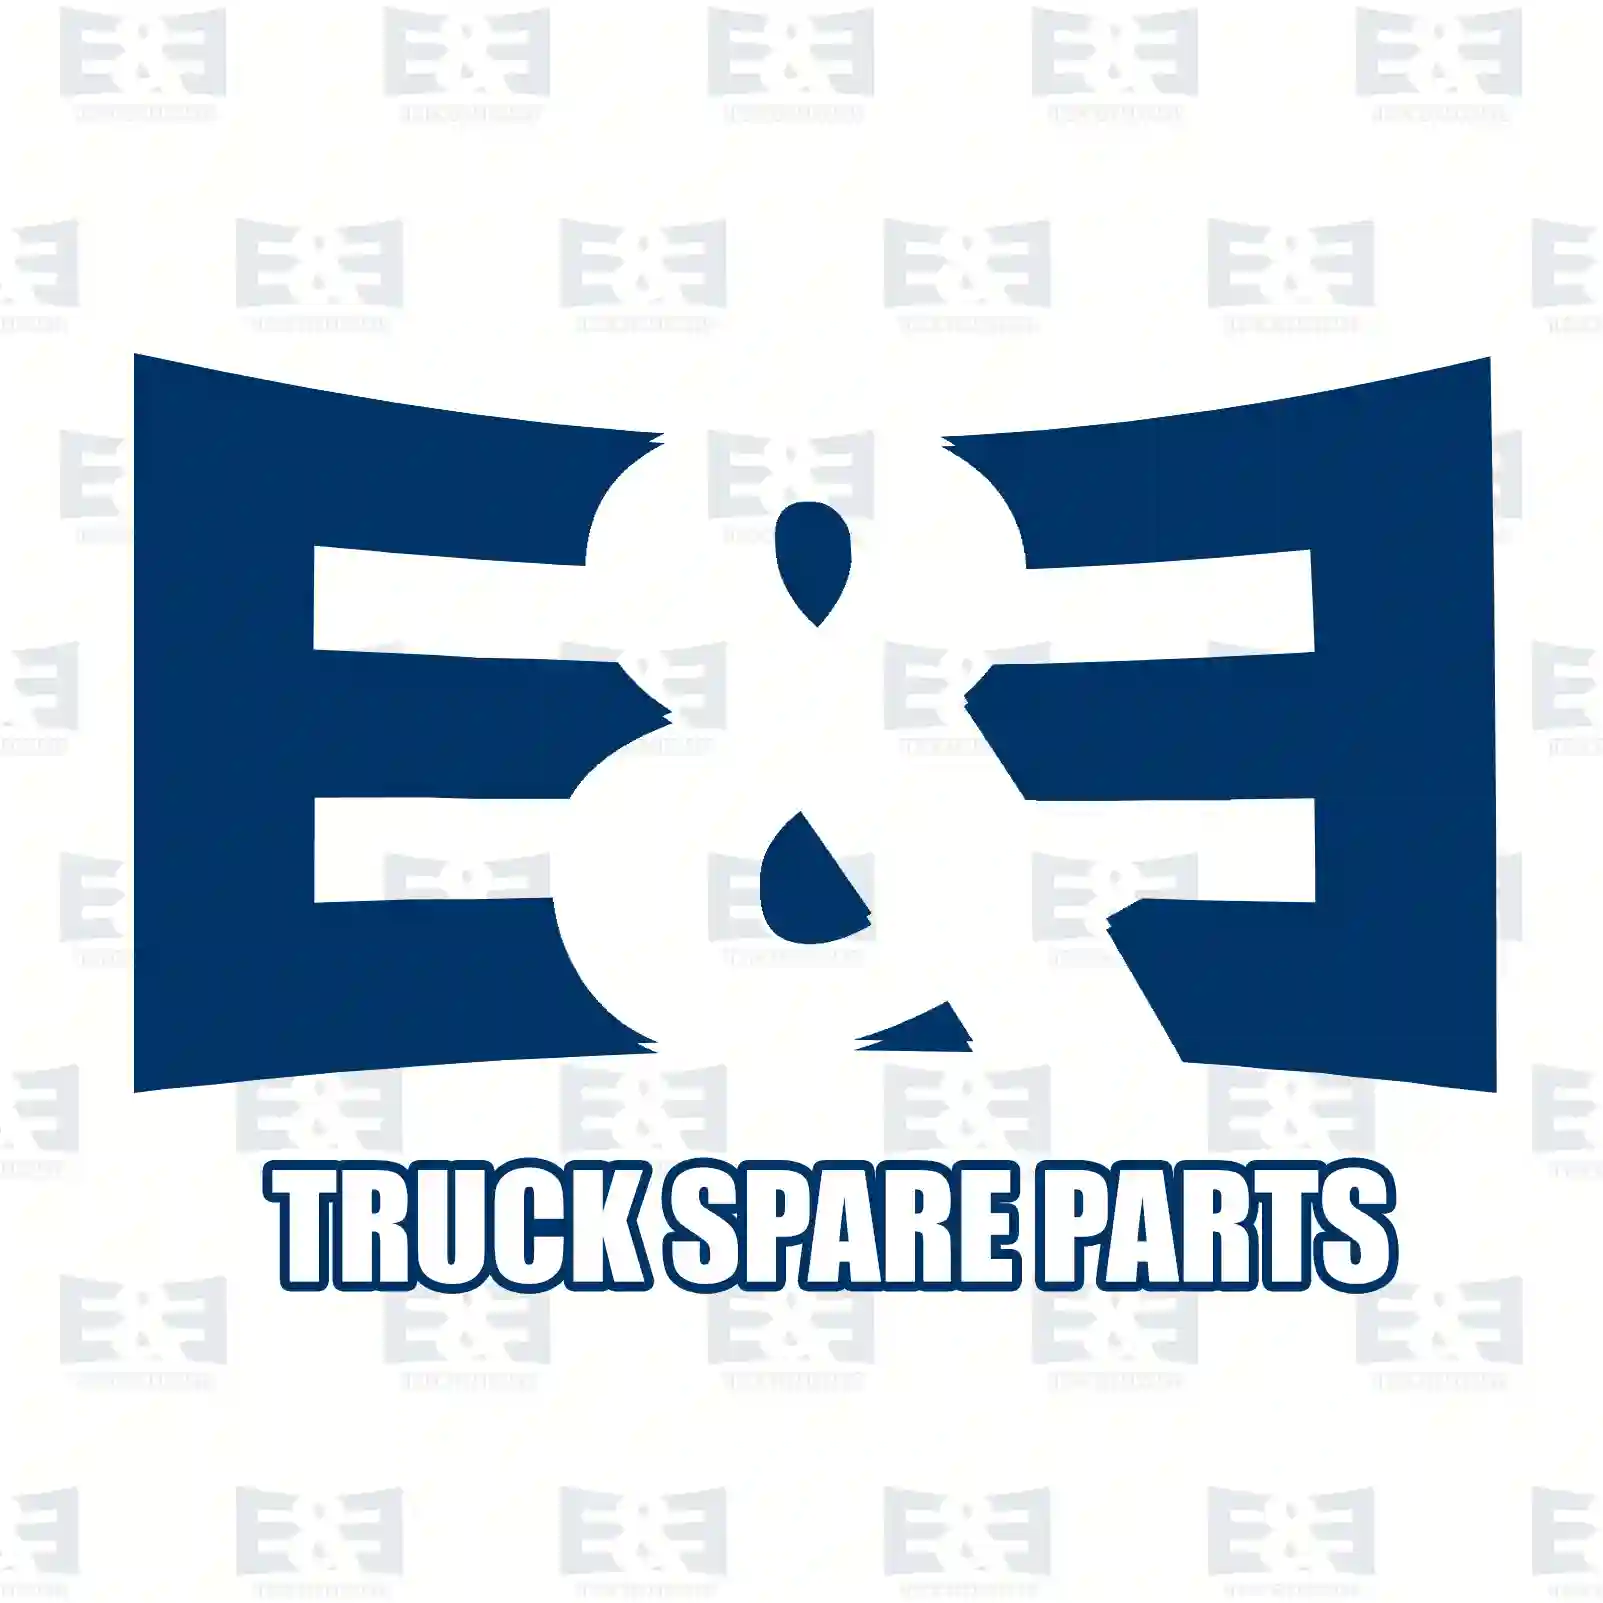 Expansion tank, 2E2202271, 504359964, ZG00364-0008 ||  2E2202271 E&E Truck Spare Parts | Truck Spare Parts, Auotomotive Spare Parts Expansion tank, 2E2202271, 504359964, ZG00364-0008 ||  2E2202271 E&E Truck Spare Parts | Truck Spare Parts, Auotomotive Spare Parts